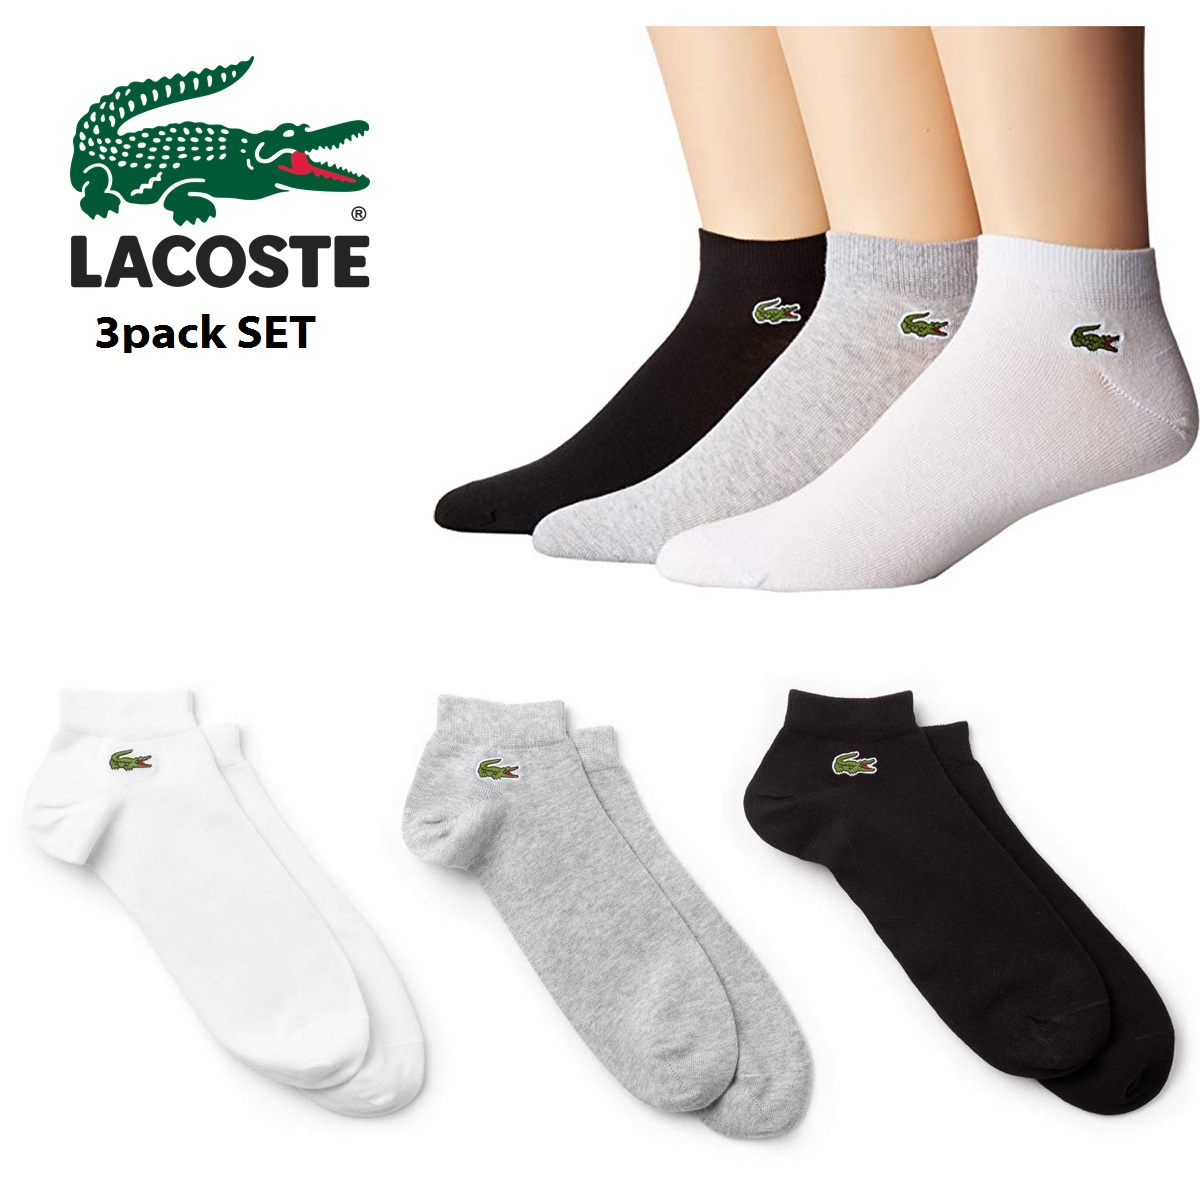 lacoste socks women's